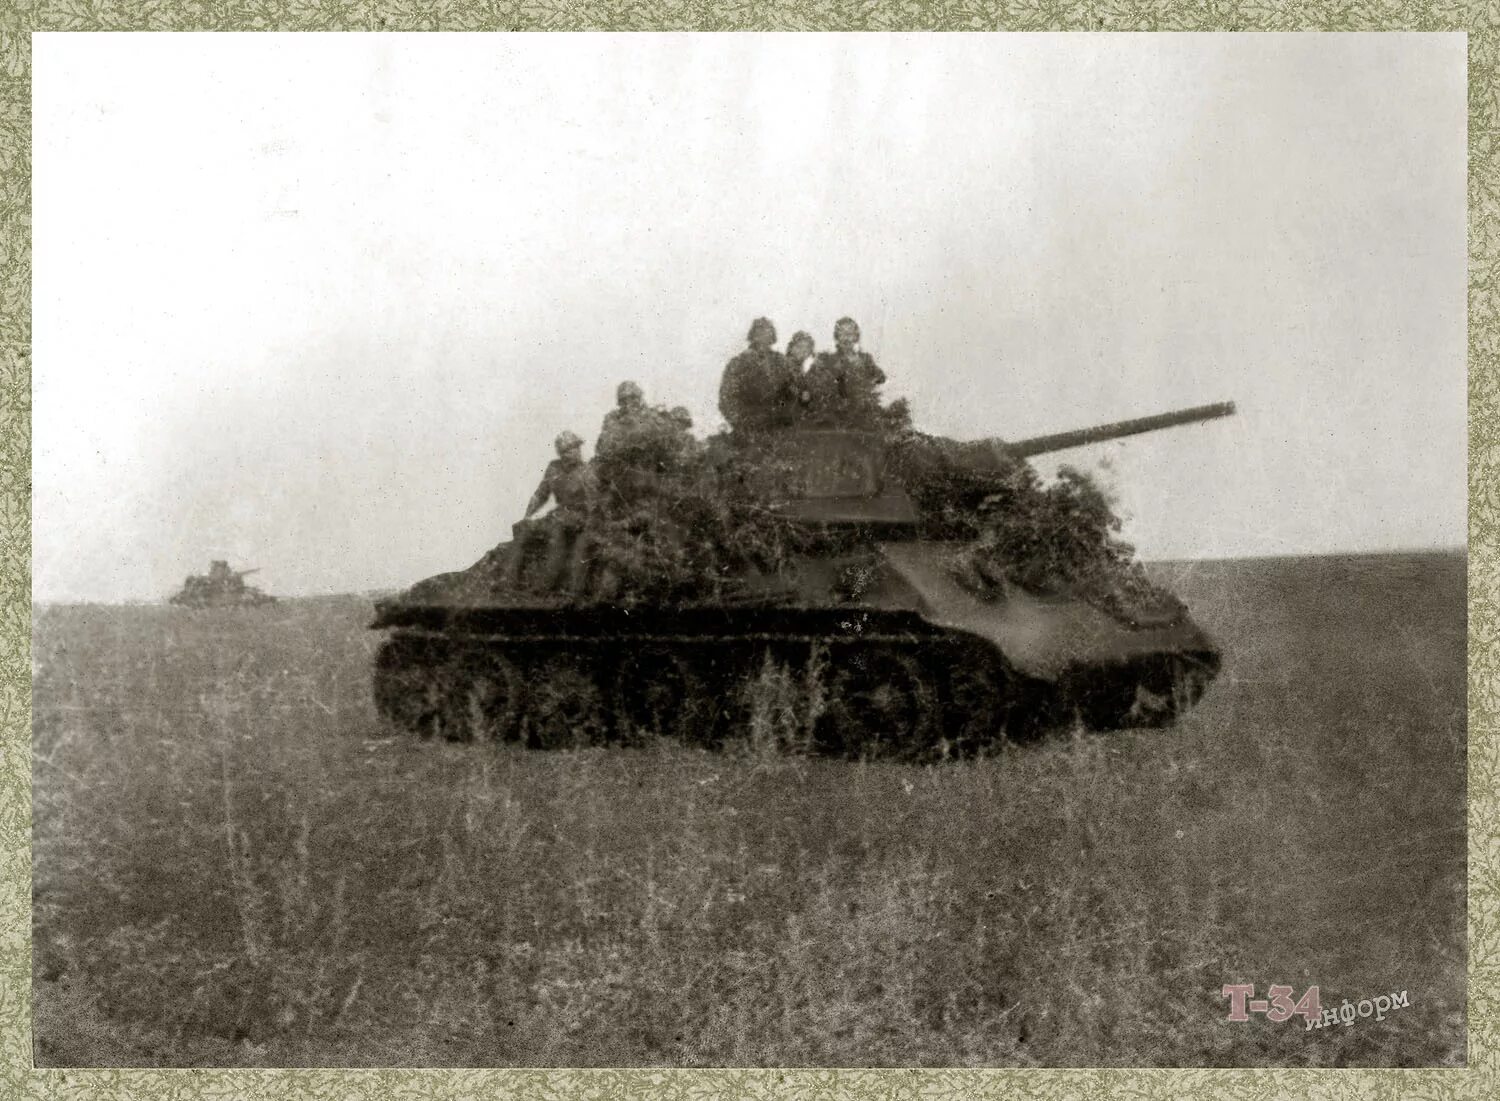 1-Я Гвардейская танковая армия т-34. 9-Й Гвардейский танковый корпус 1944. Т-34-85 7 Гвардейский танковый корпус. Т-34-85 9-Й гв.танковый корпус. 3 гвардейская танковая